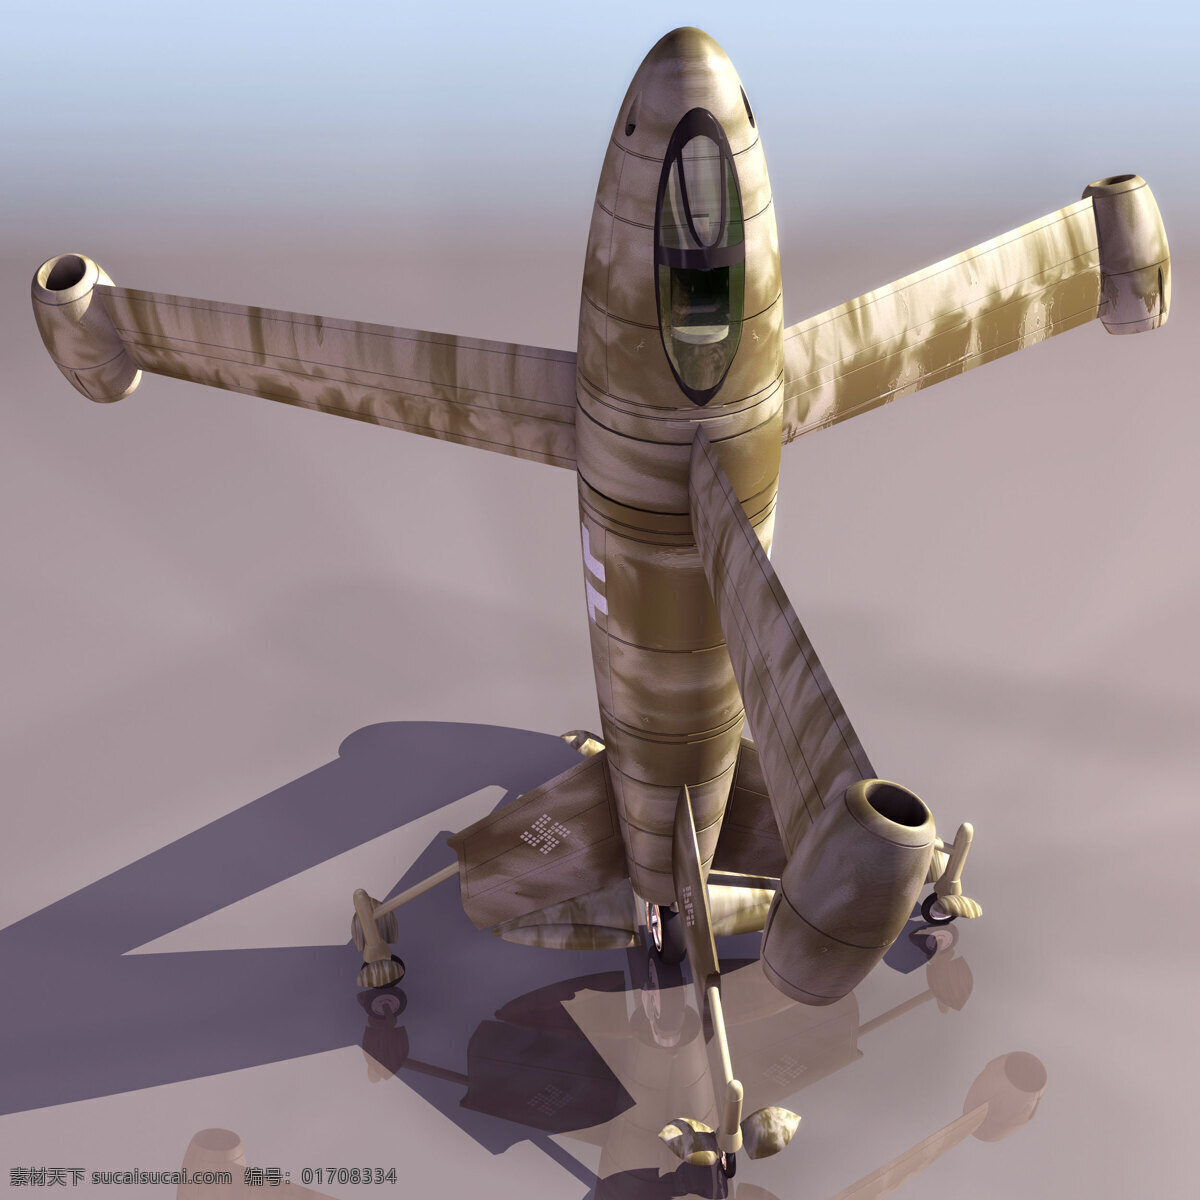 炫 酷 飞机模型 3d模型 飞机素材 炫酷飞机模型 3d模型素材 其他3d模型